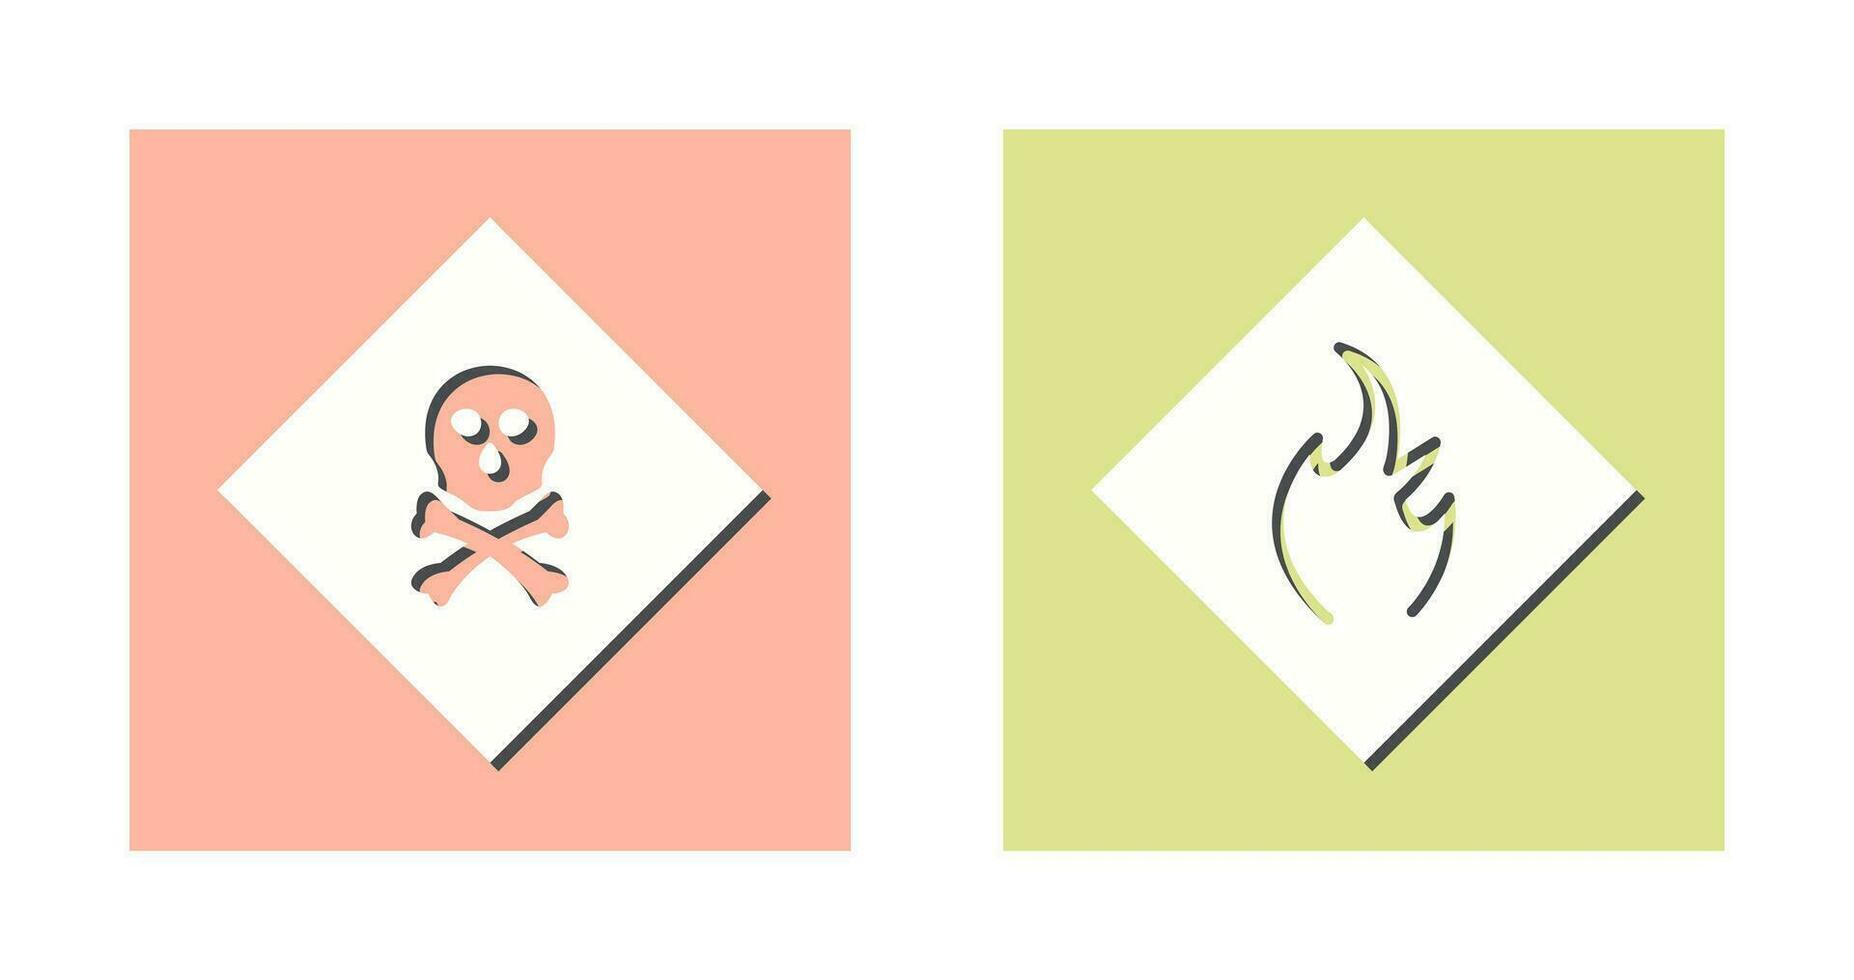 giftig gas- en Gevaar van vlam icoon vector